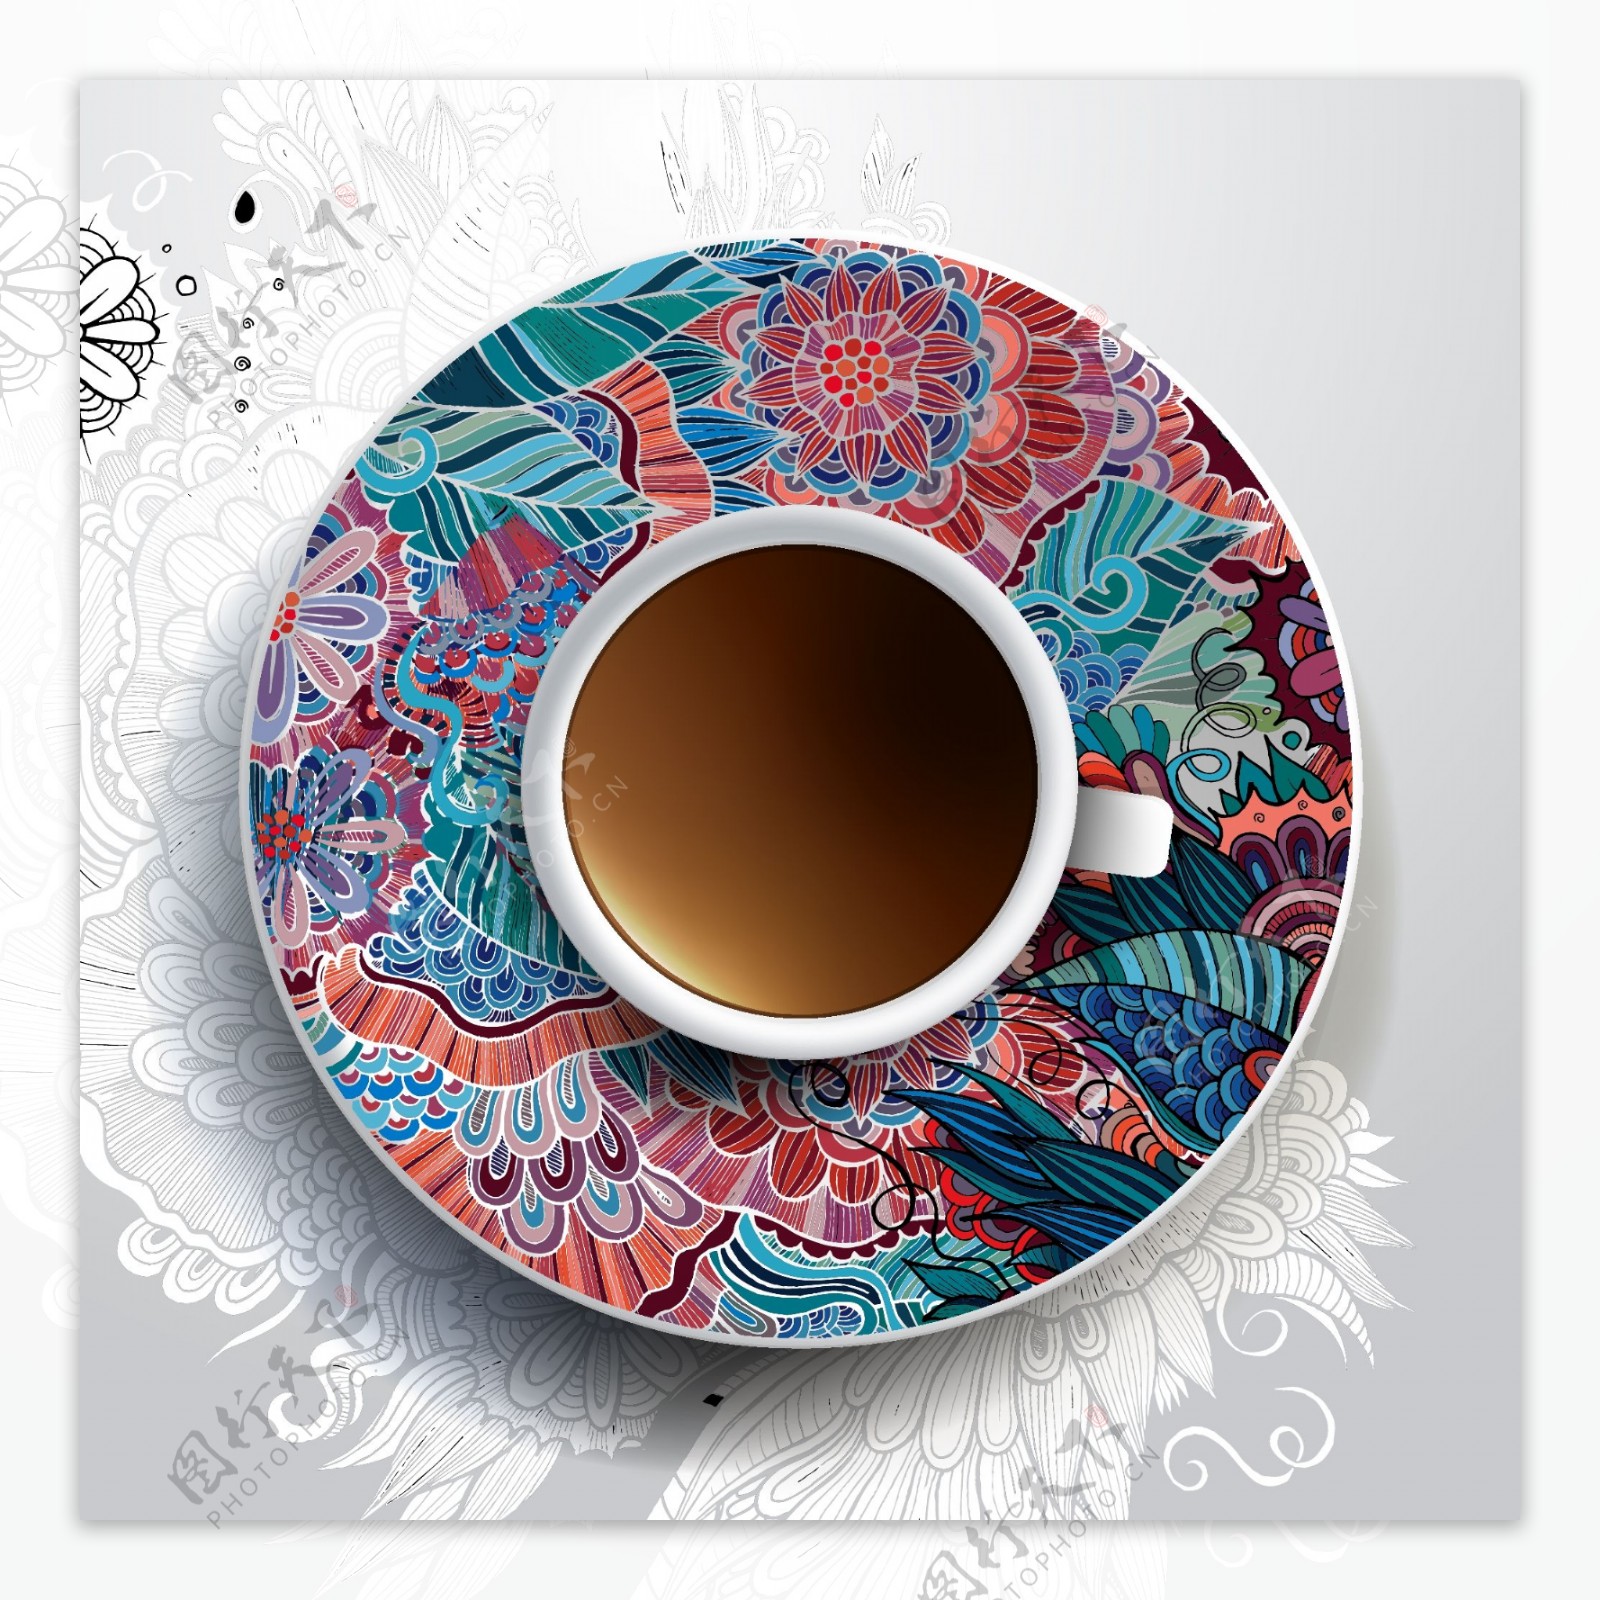 炫彩花纹咖啡杯具